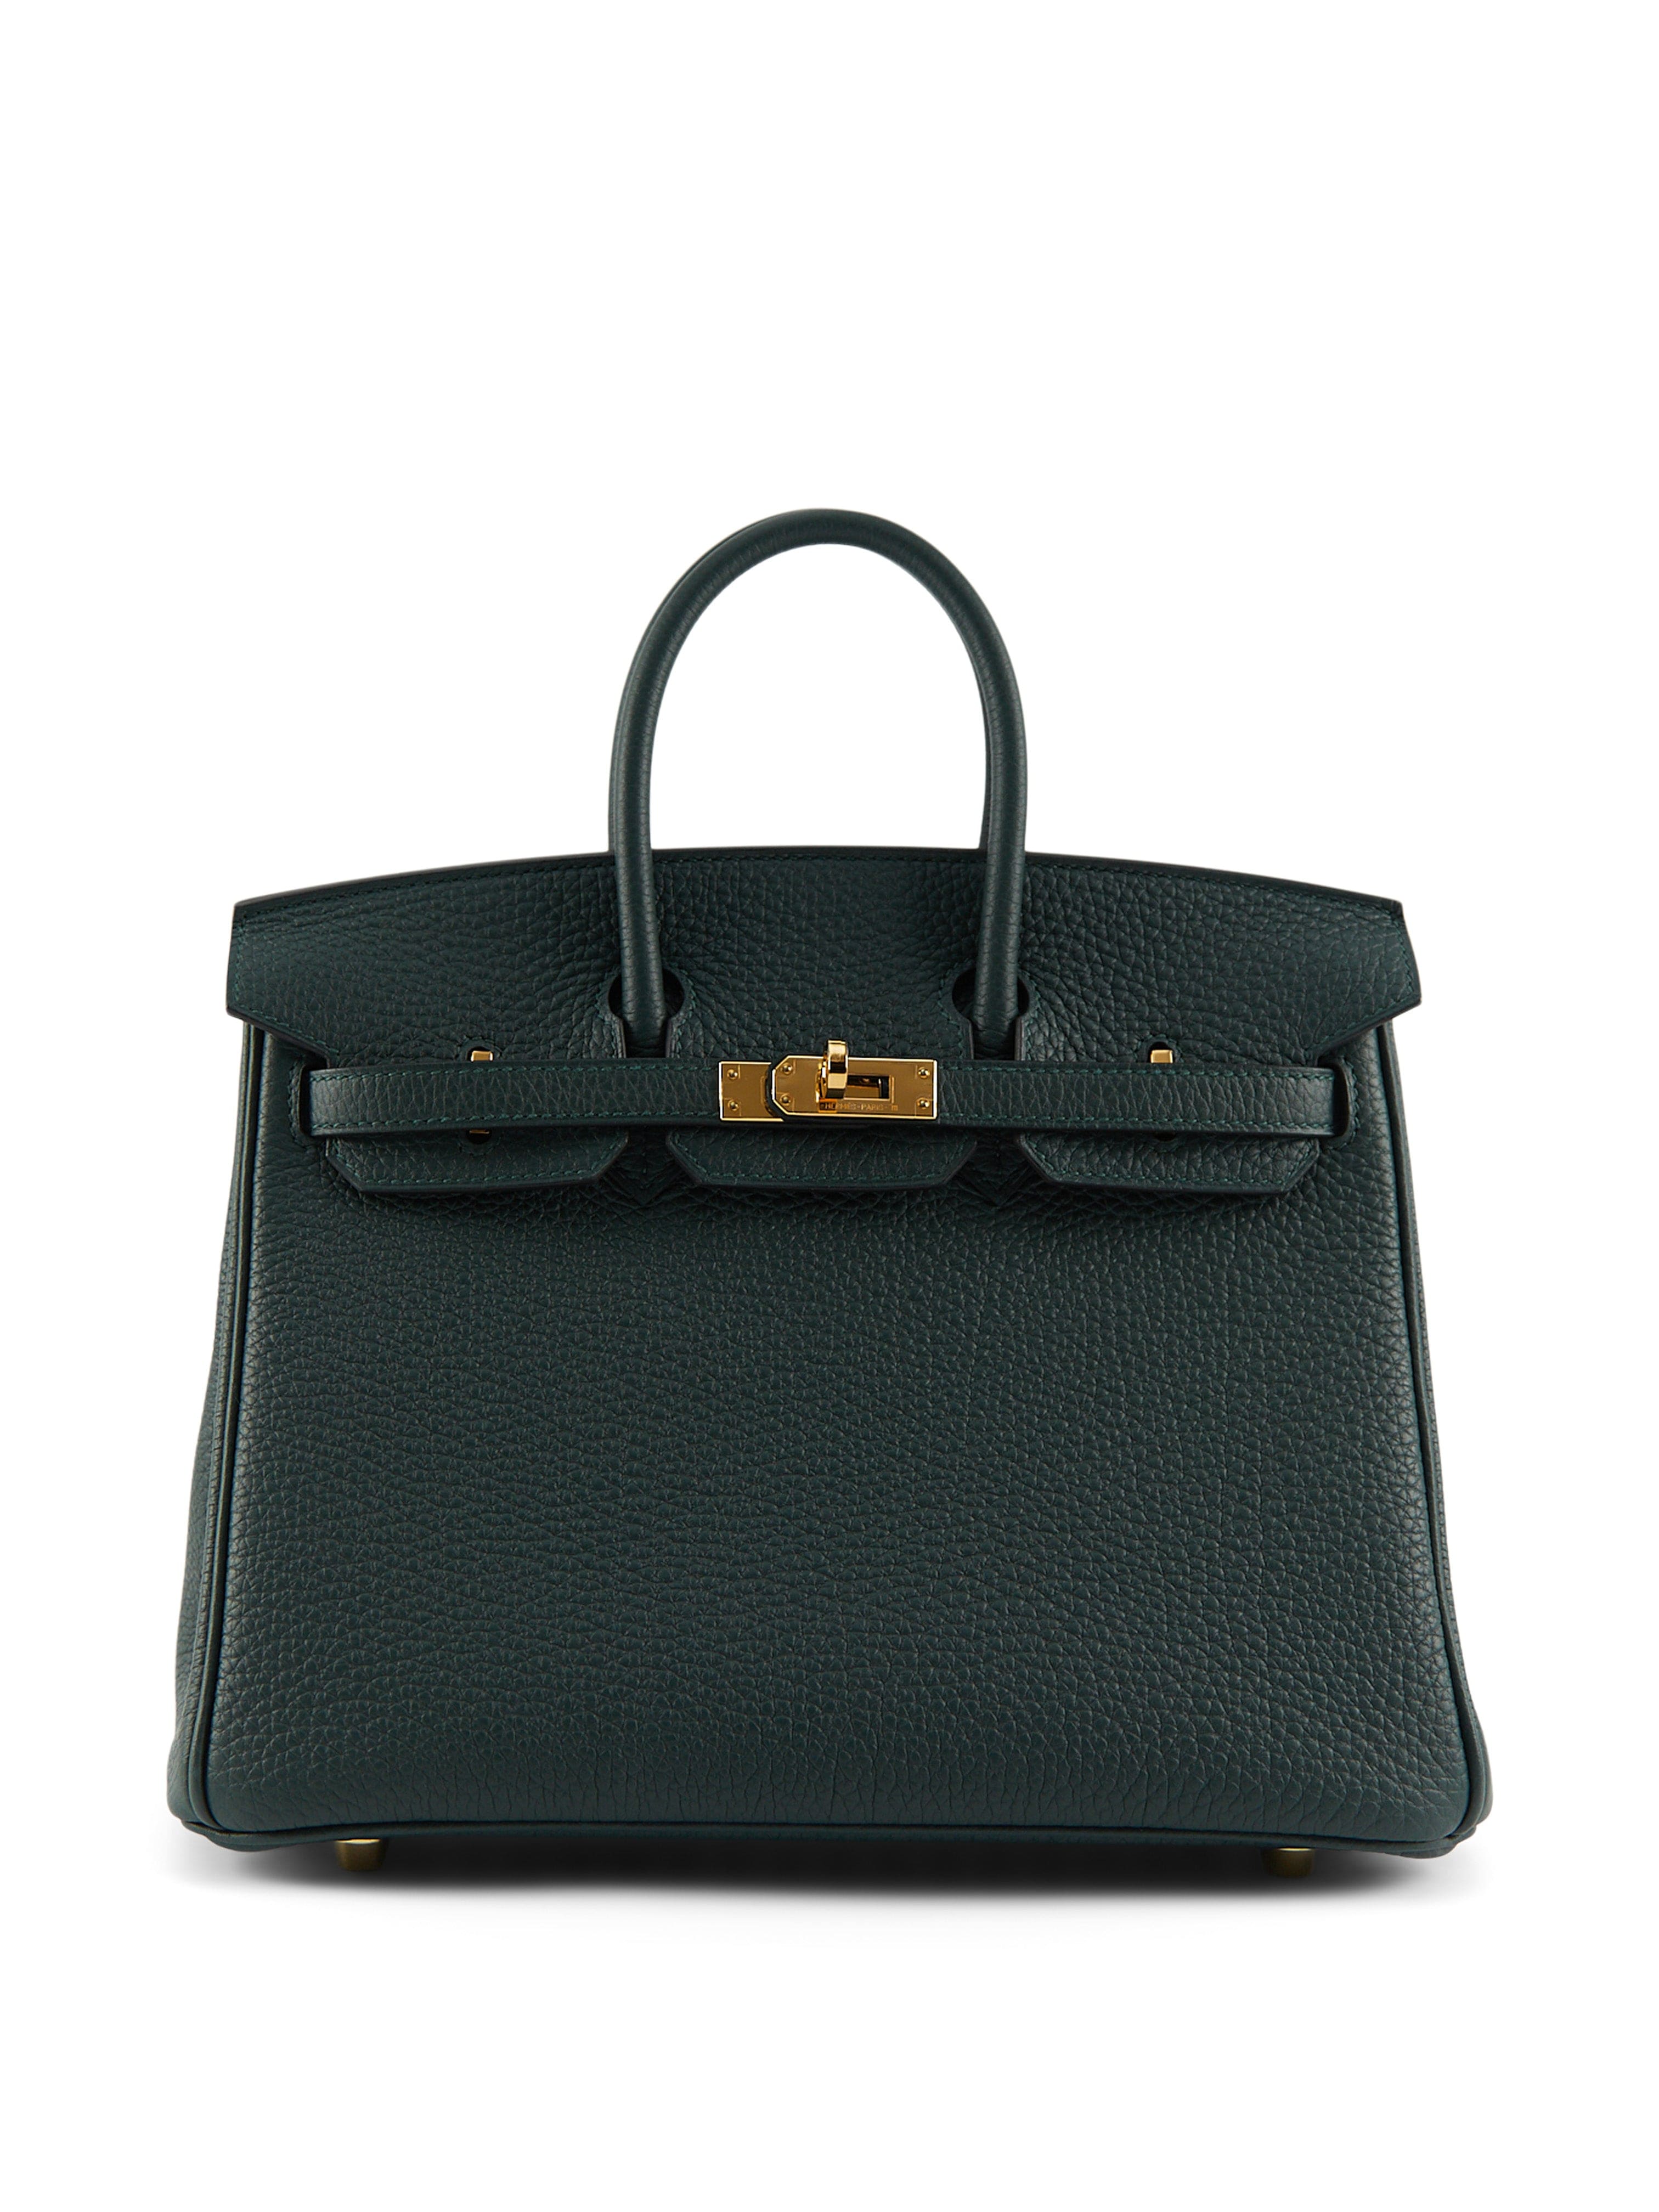 LuxuryVault HERMÈS BIRKIN 25CM VERT CYPRESS Togo Leather with Gold Hardware